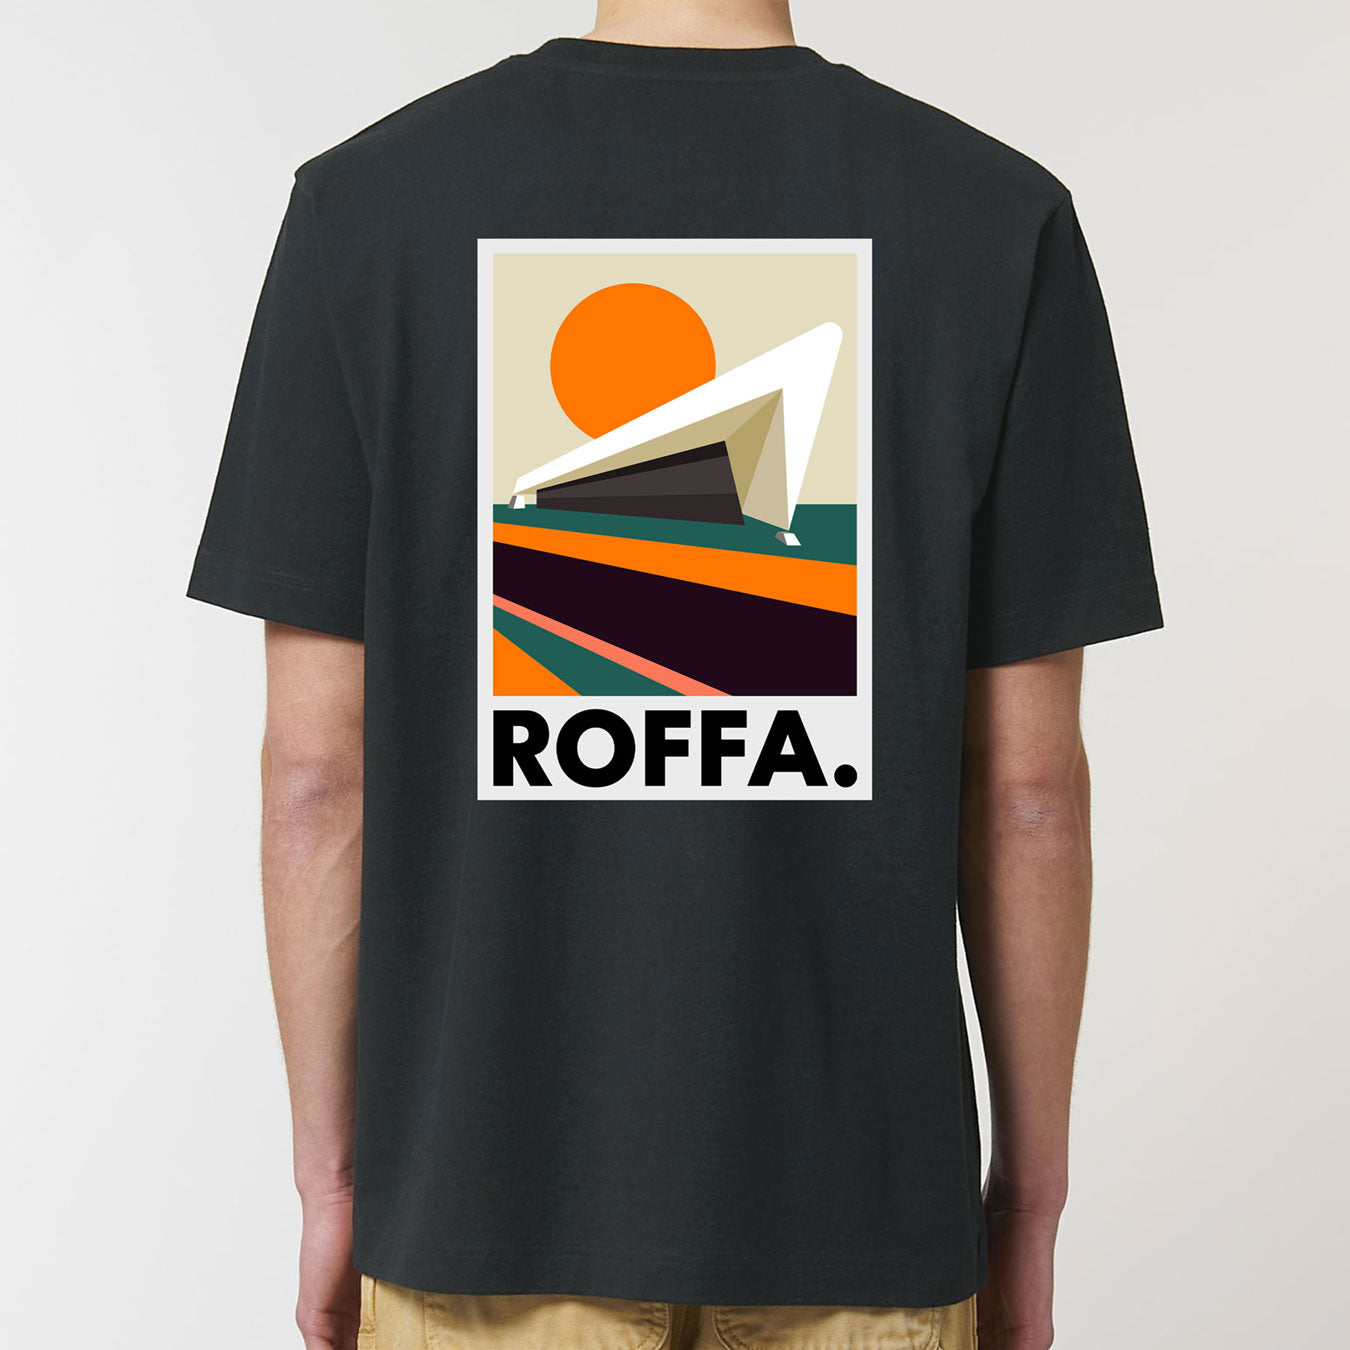 zwart heavy t-shirt Roffa en rotterdam centraal station logo